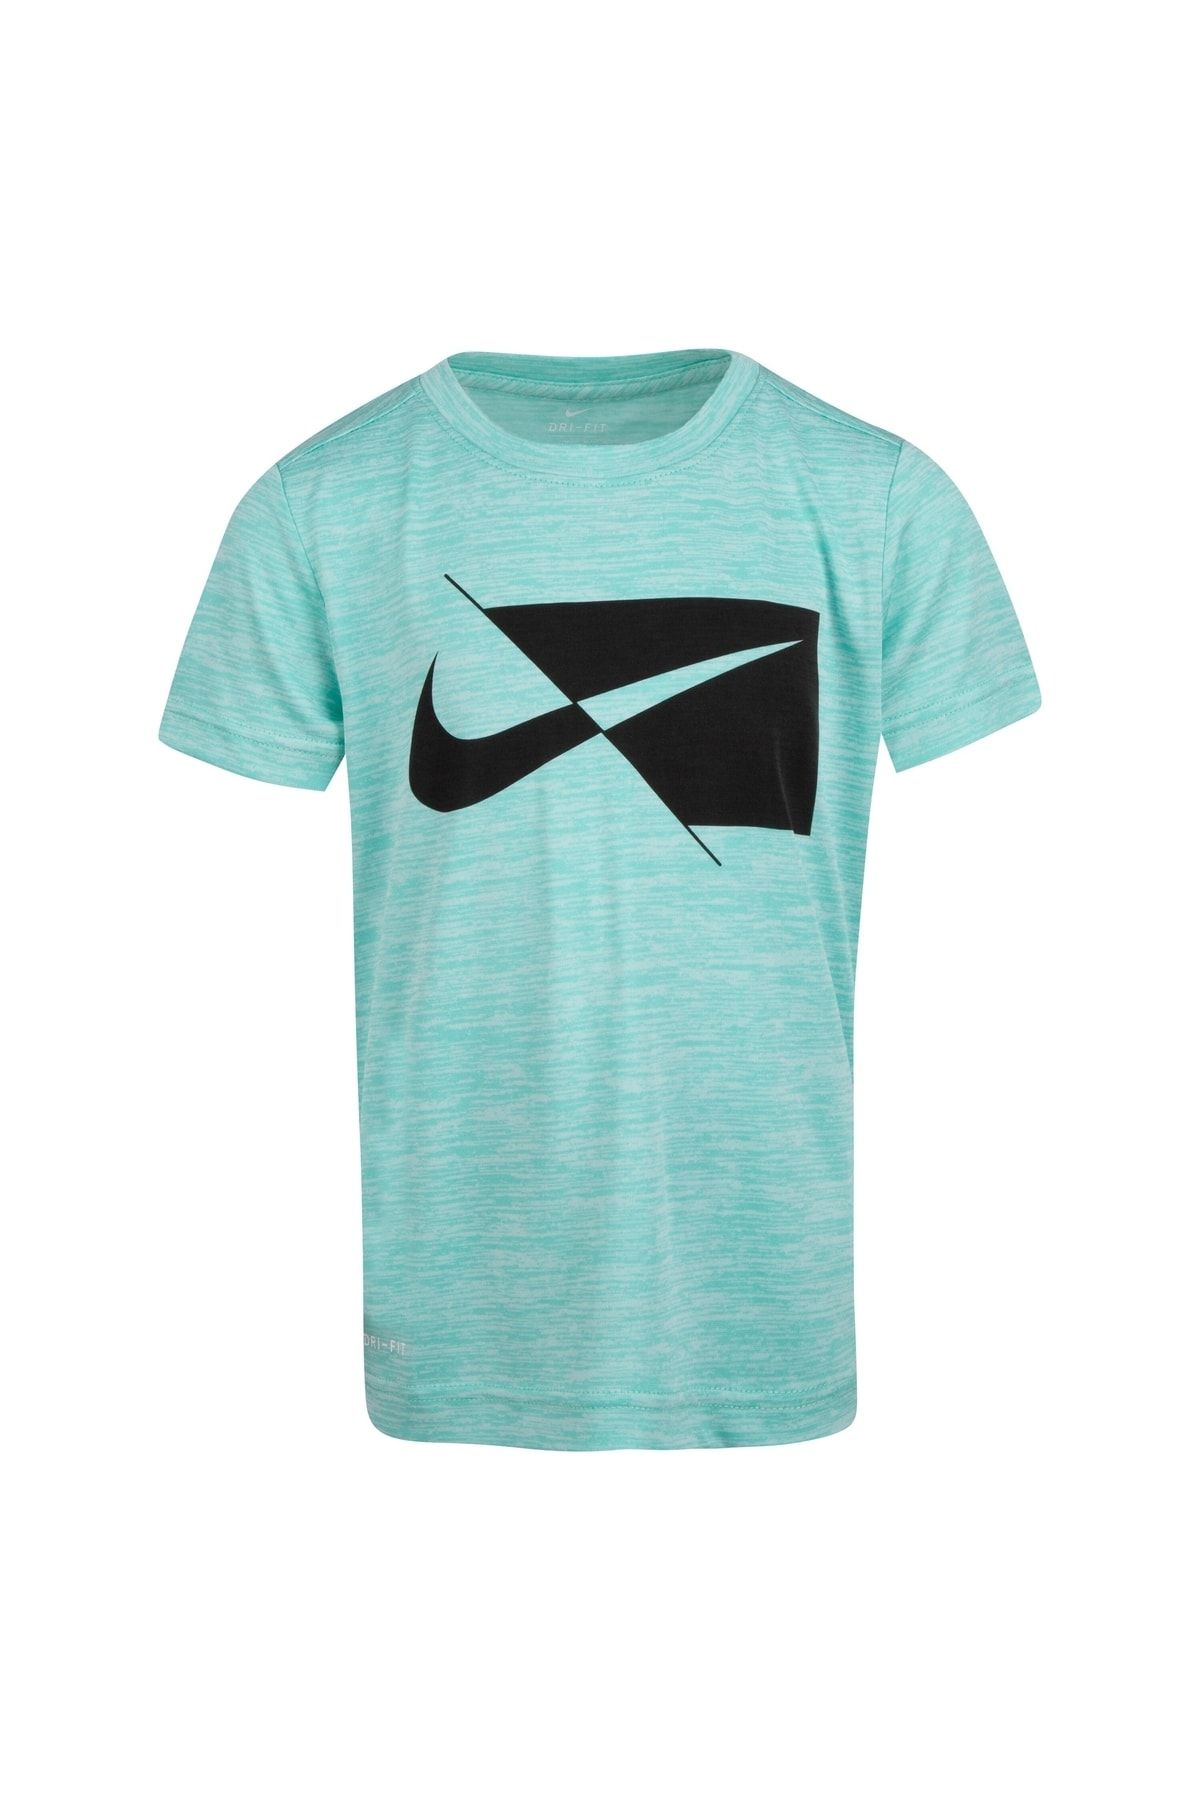 Nike Dry Ss Top Çocuk T-shirt 86H475-F1R